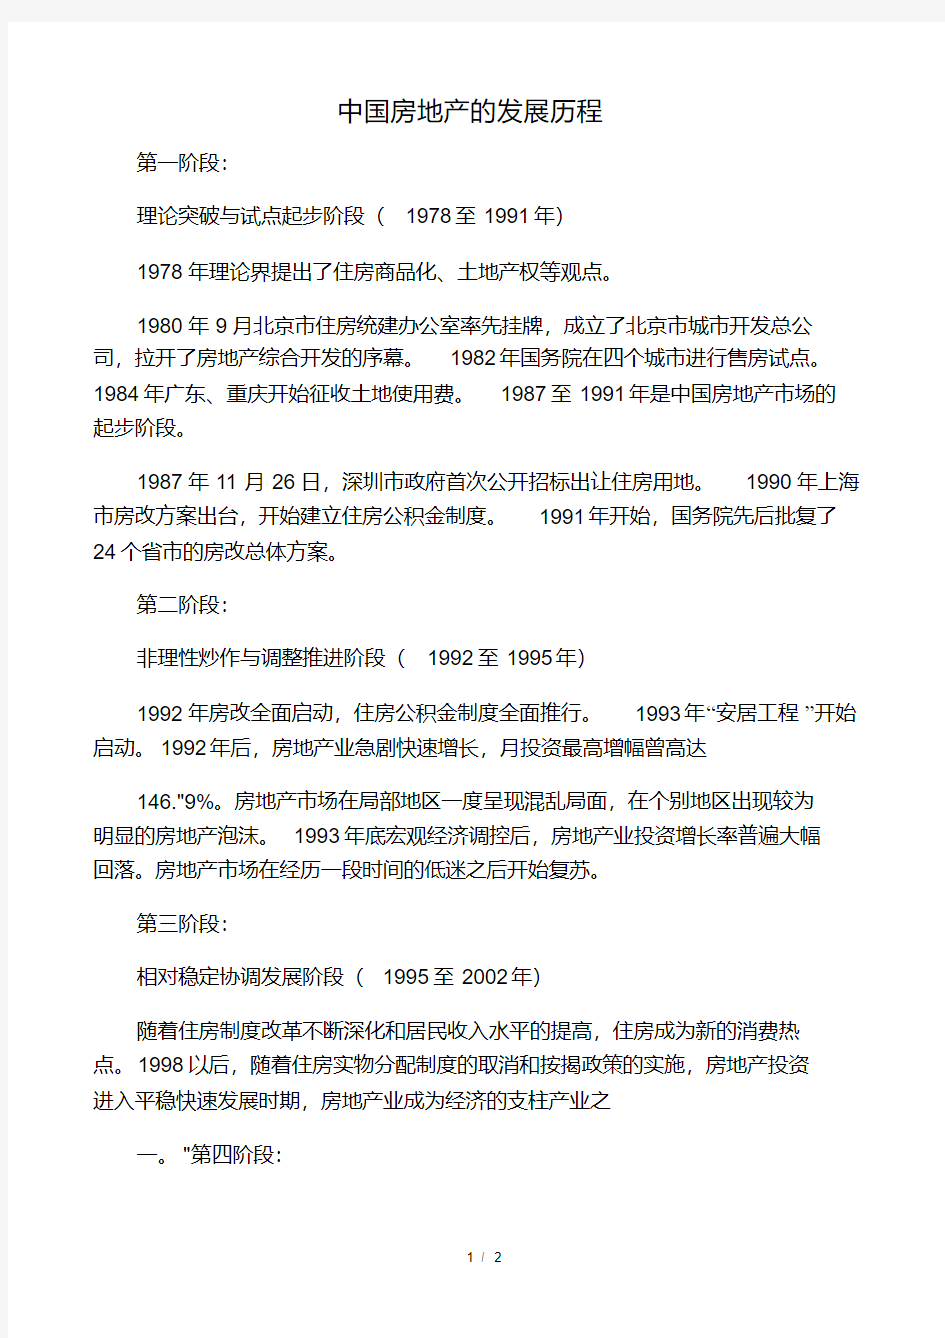 中国房地产的发展历程.pdf